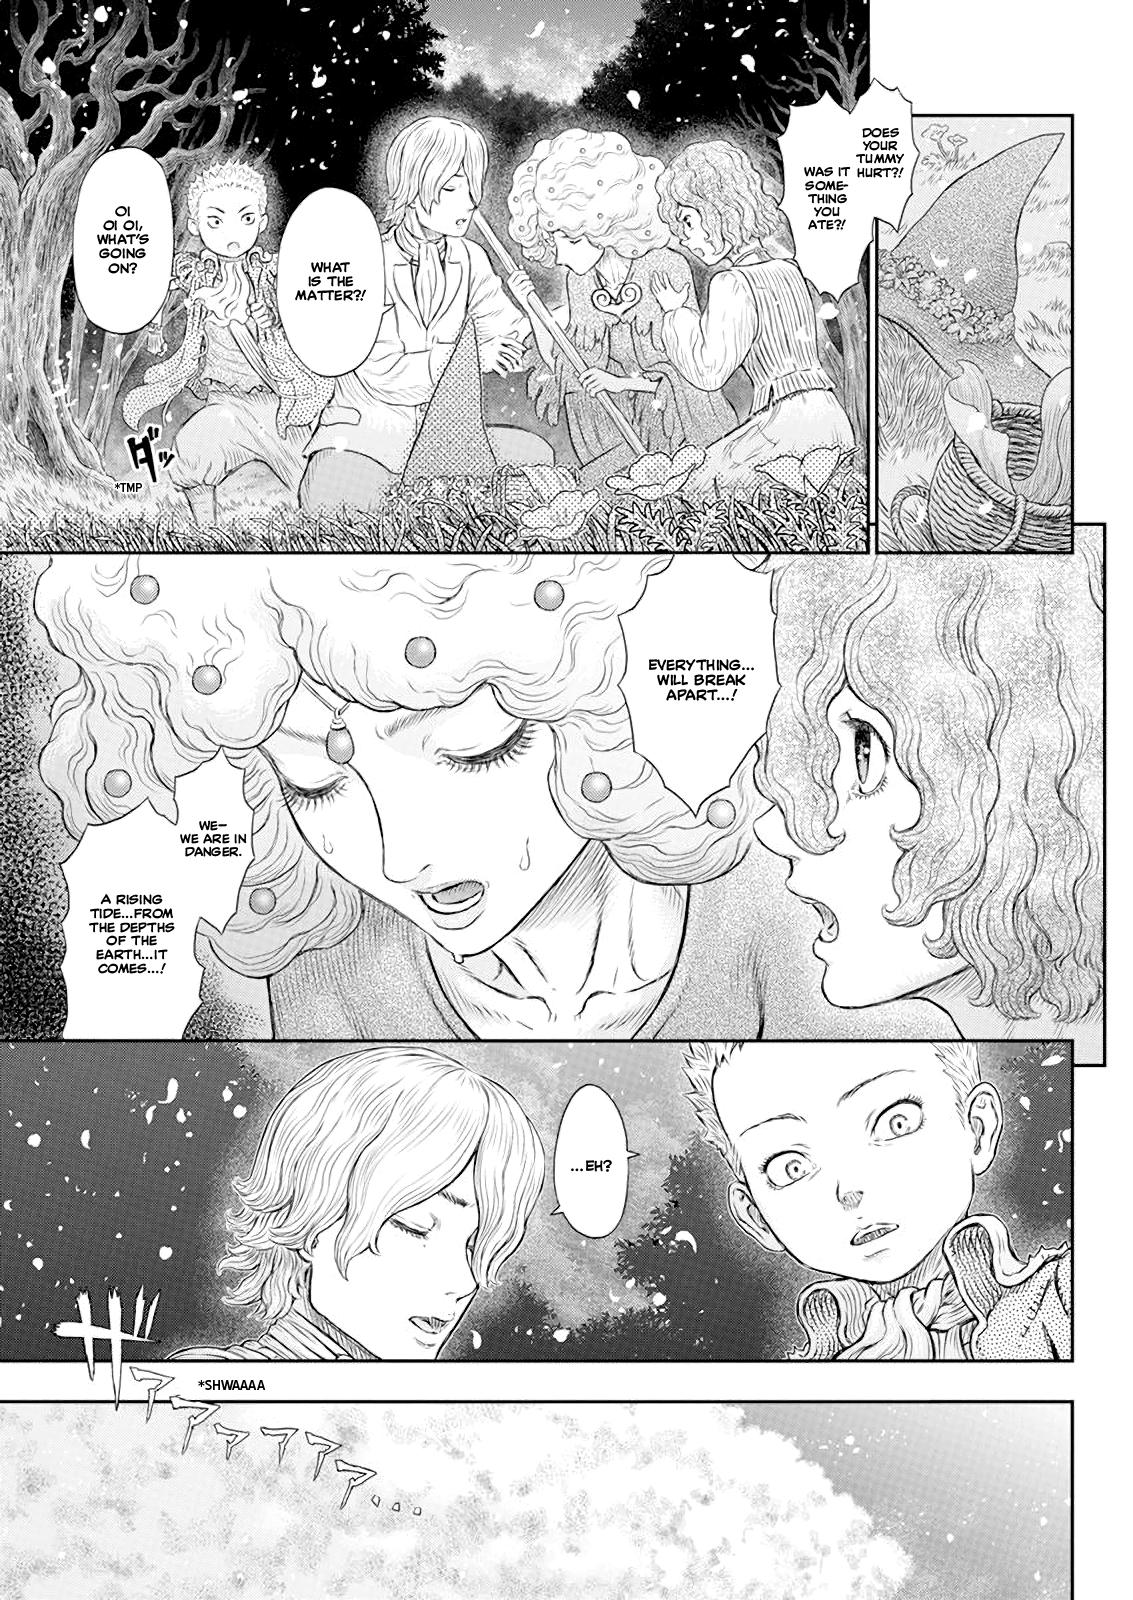 Berserk Manga Chapter 367 image 05